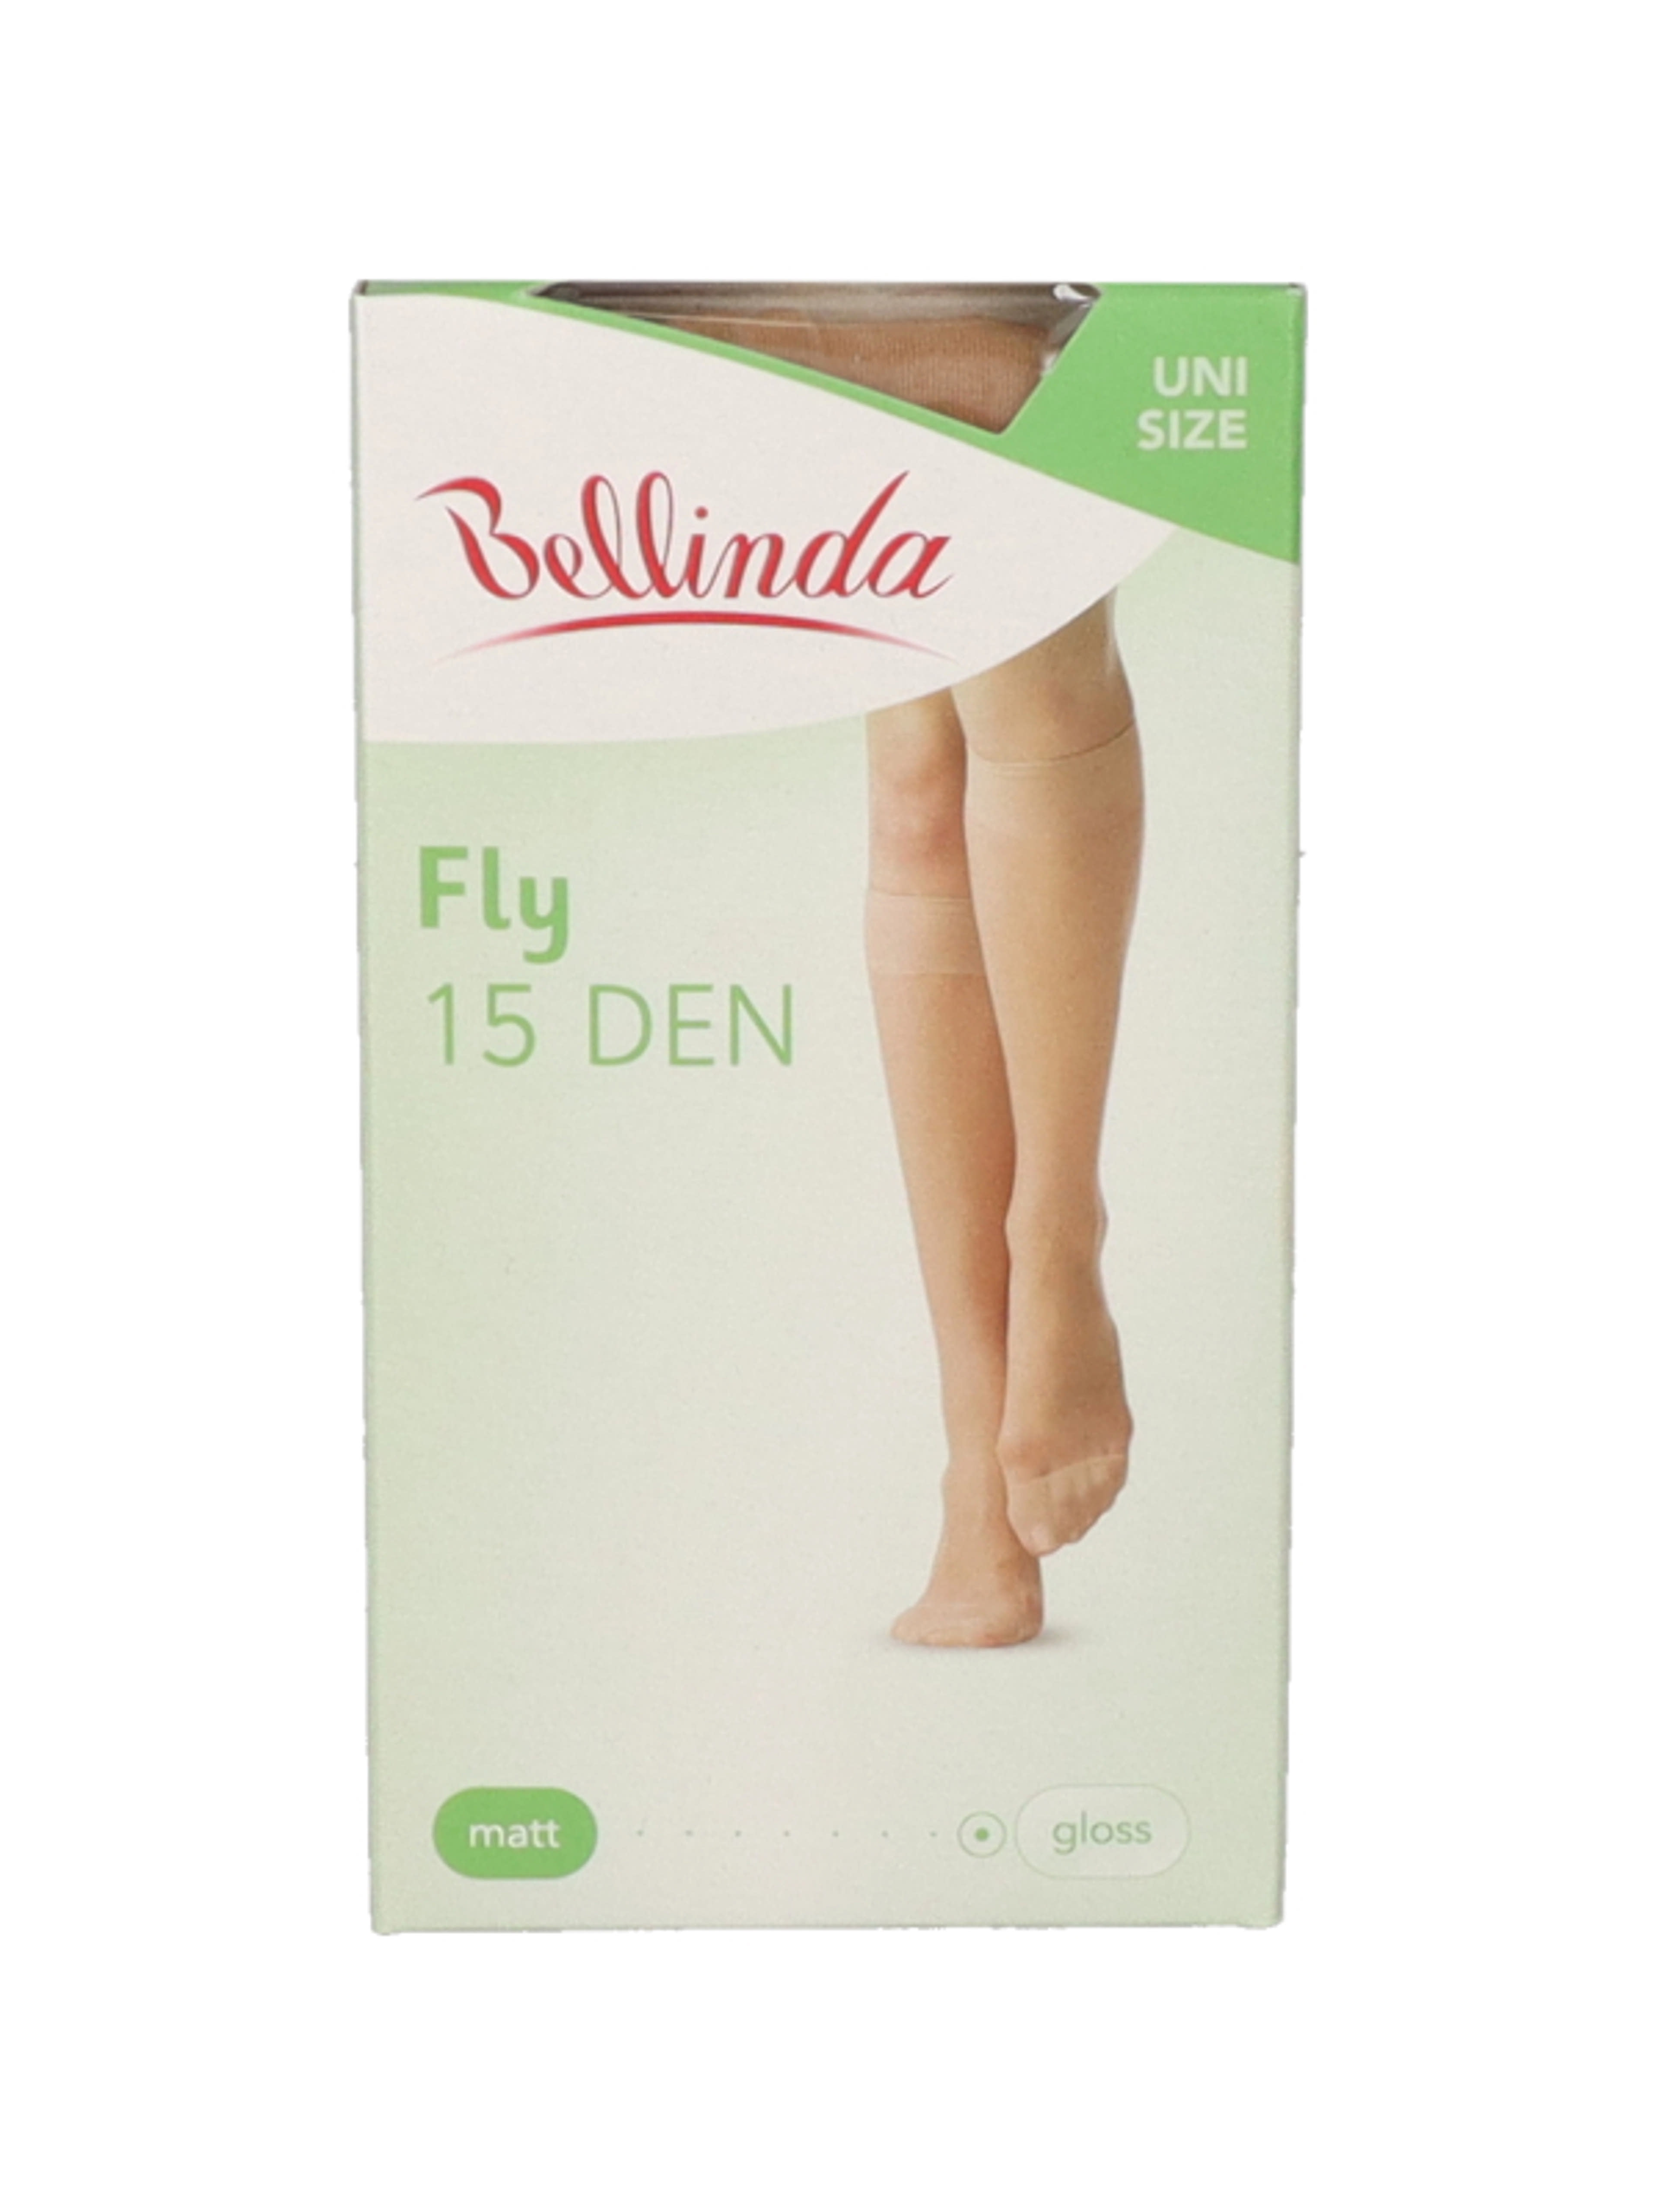 Bellinda Fly 15 térdfix, almond, unisex - 1 db